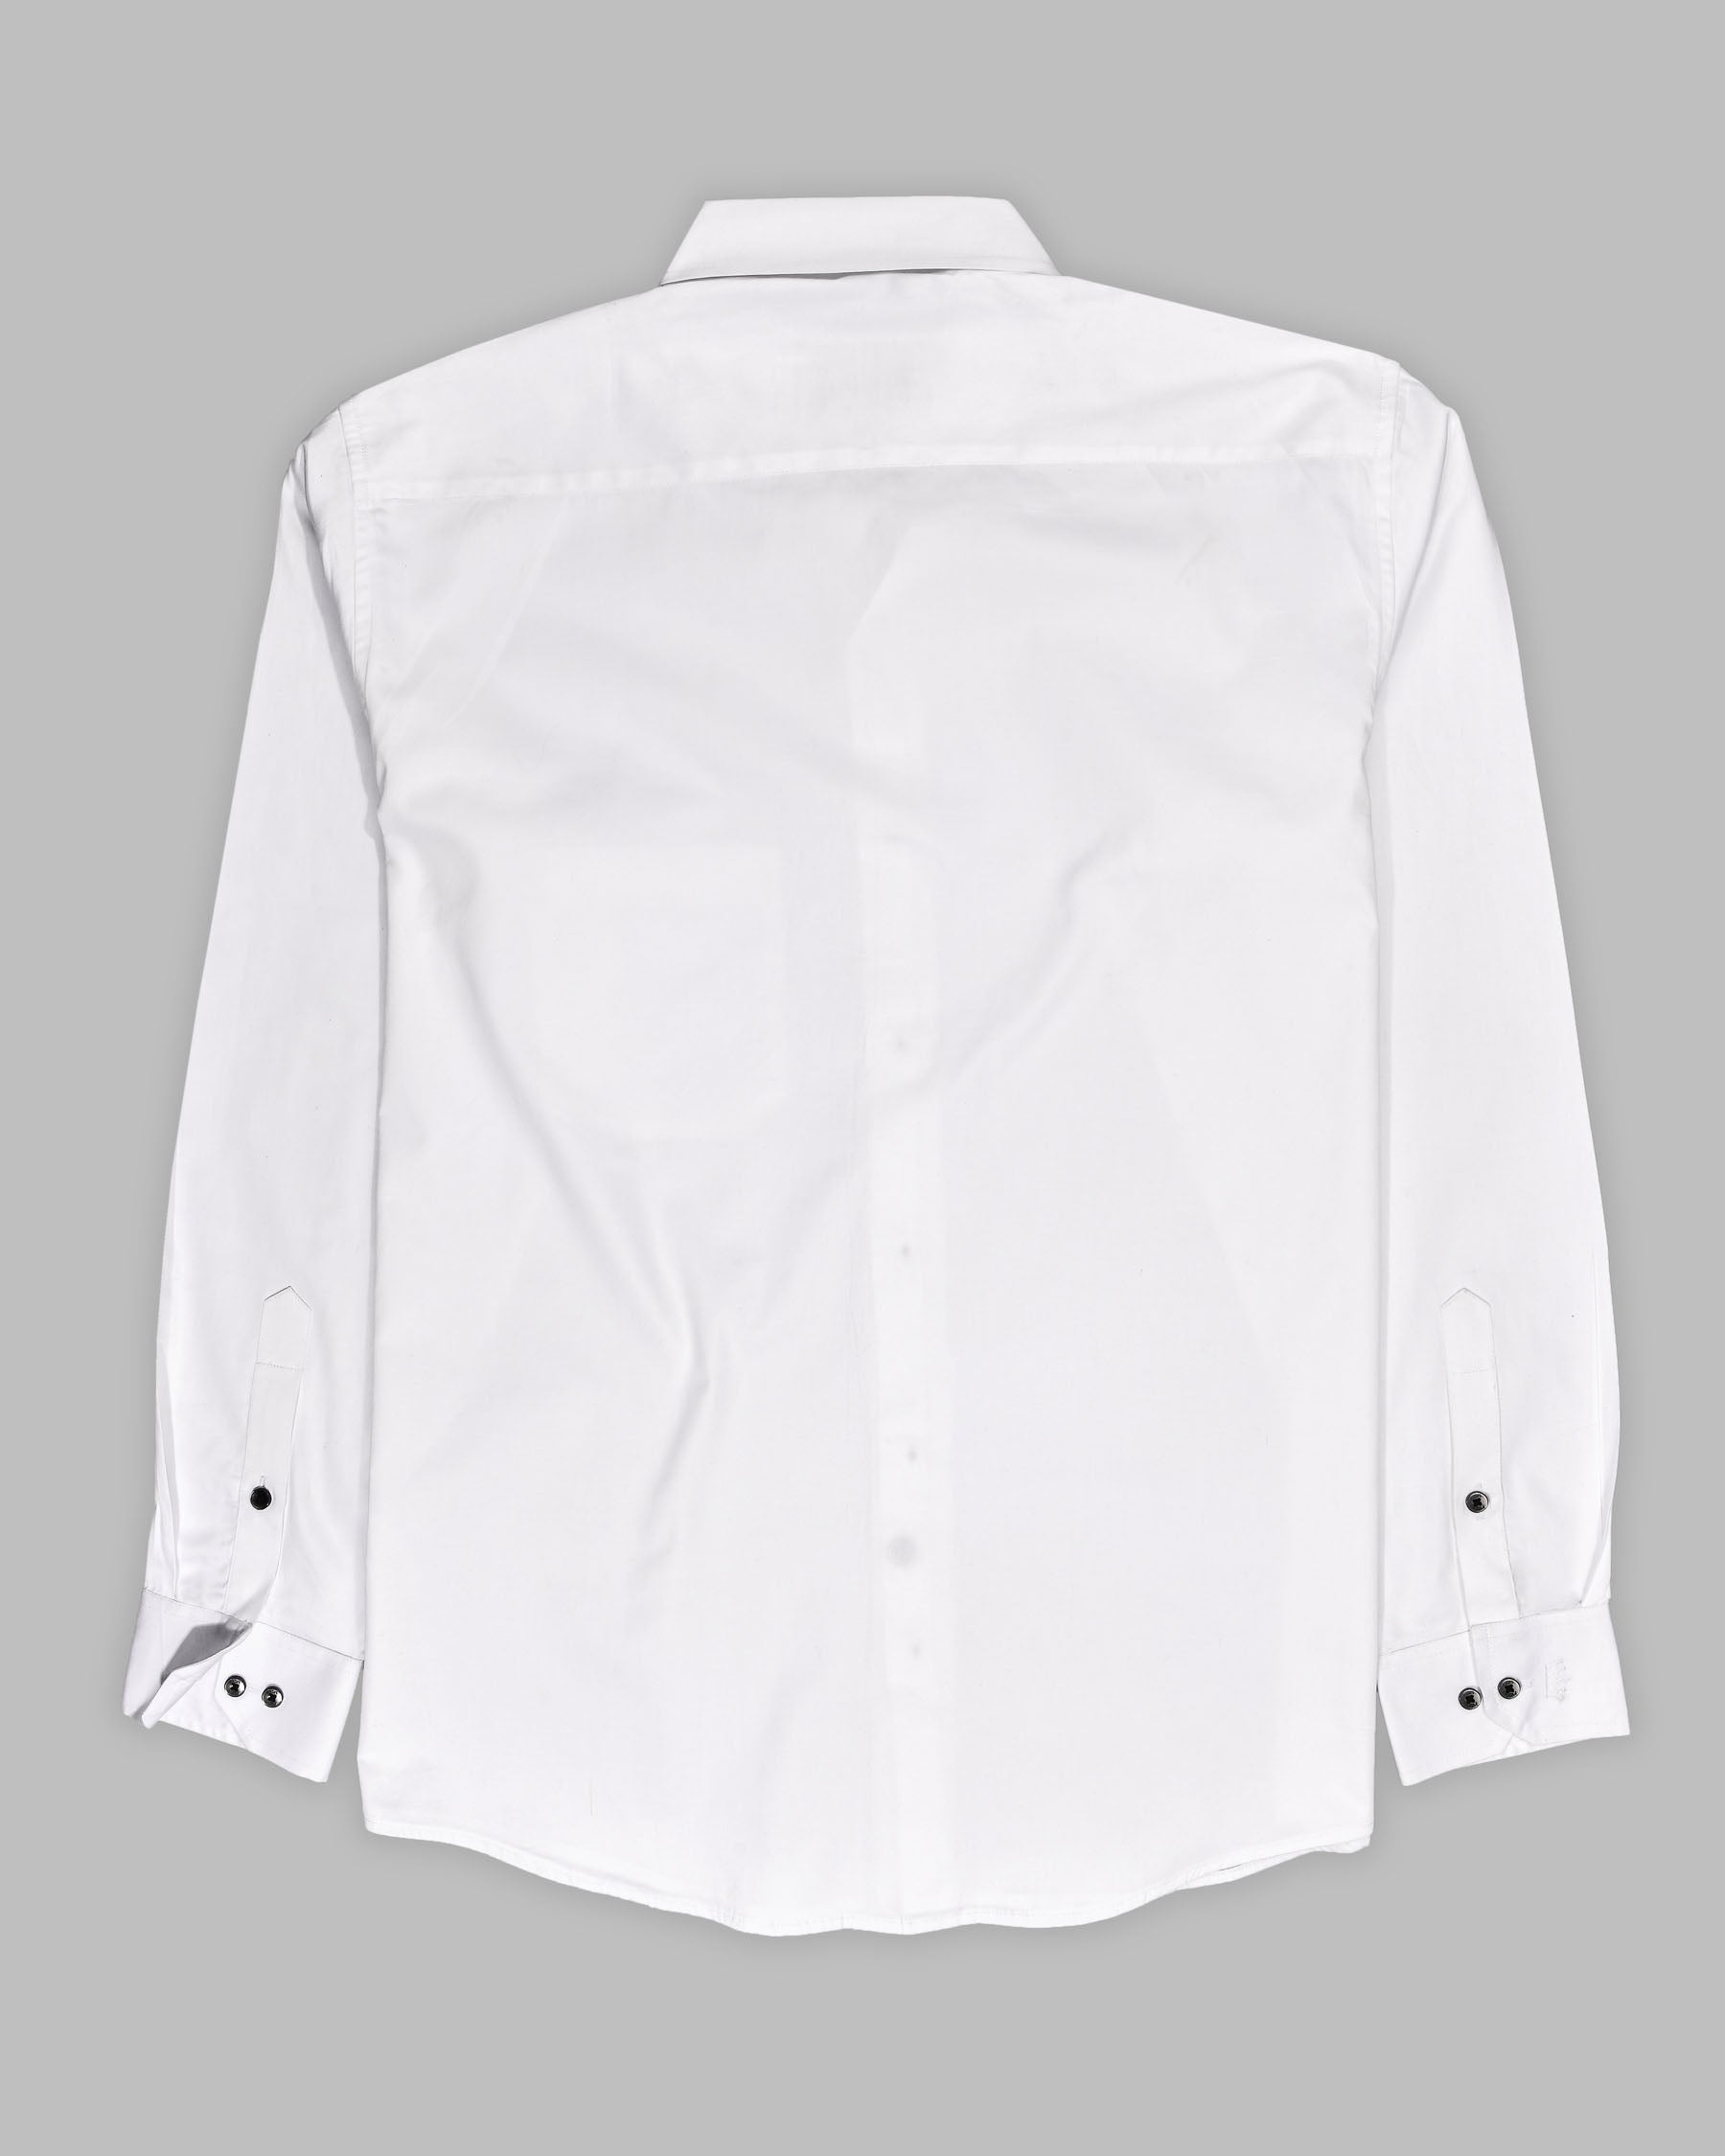 Bright White Subtle Sheen Super Soft Premium Cotton Shirt 4384-BLK-P34-38, 4384-BLK-P34-H-38, 4384-BLK-P34-39, 4384-BLK-P34-H-39, 4384-BLK-P34-40, 4384-BLK-P34-H-40, 4384-BLK-P34-42, 4384-BLK-P34-H-42, 4384-BLK-P34-44, 4384-BLK-P34-H-44, 4384-BLK-P34-46, 4384-BLK-P34-H-46, 4384-BLK-P34-48, 4384-BLK-P34-H-48, 4384-BLK-P34-50, 4384-BLK-P34-H-50, 4384-BLK-P34-52, 4384-BLK-P34-H-52